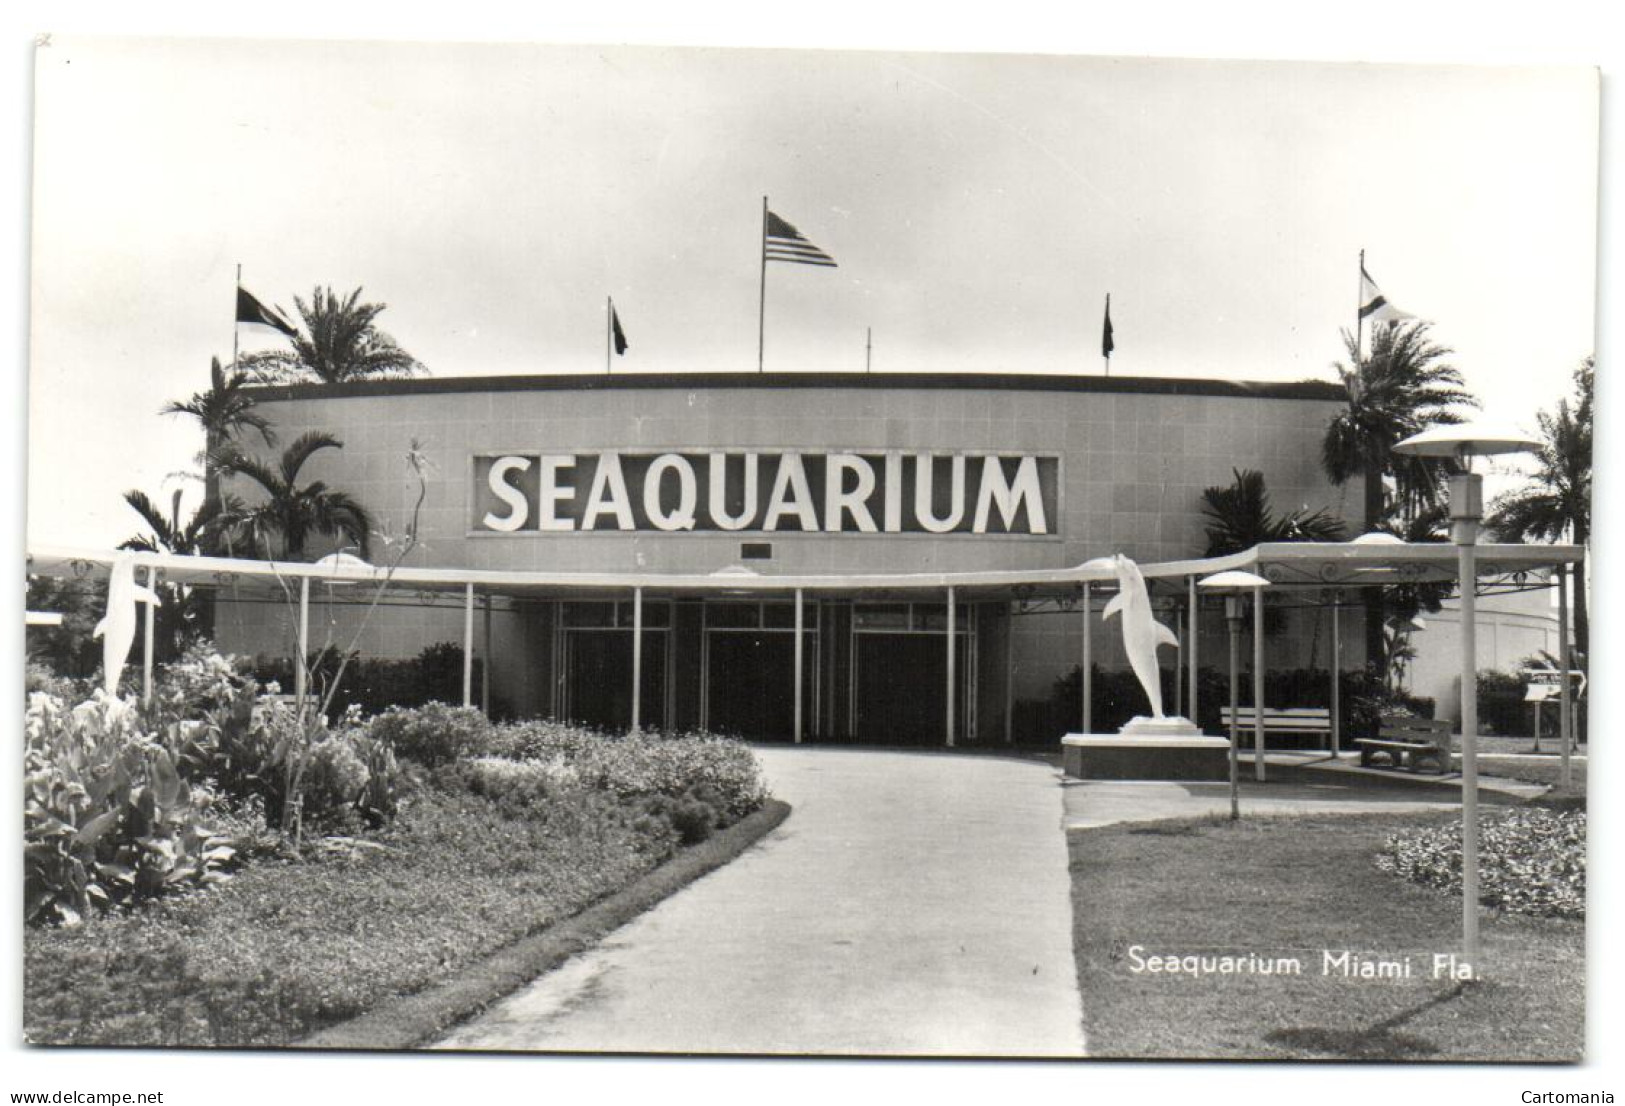 Seaquarium Miami Fla. - Miami